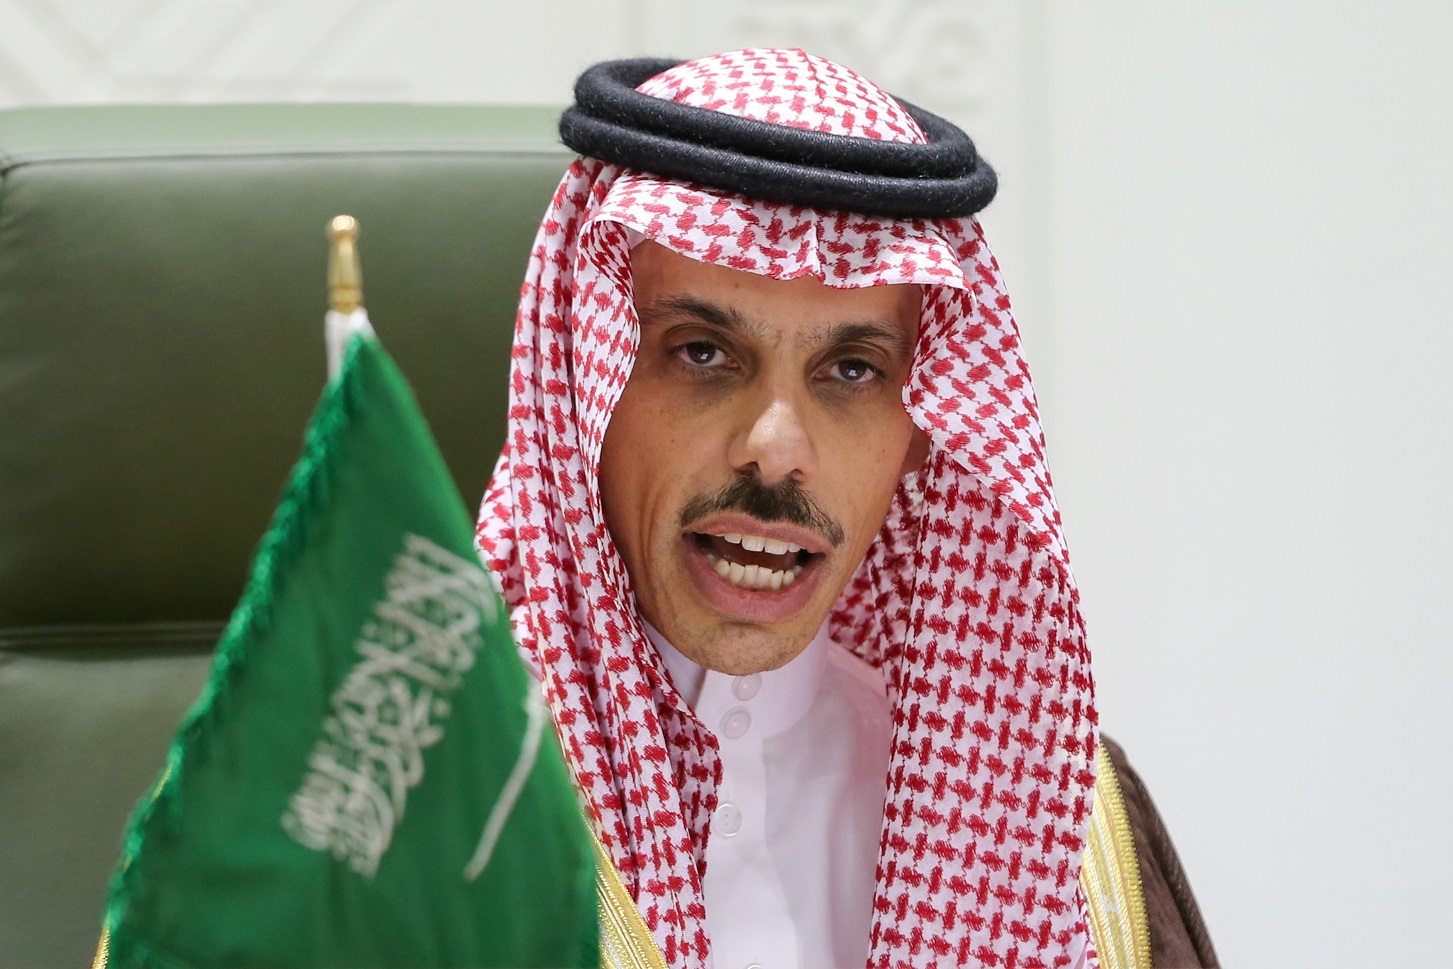 De minister van Buitenlandse Zaken van Saoedi-Arabië, Prins Faisal bin Farhan Al Saud, spreekt tijdens een persconferentie in Riyadh, Saoedi-Arabië op 22 maart 2021